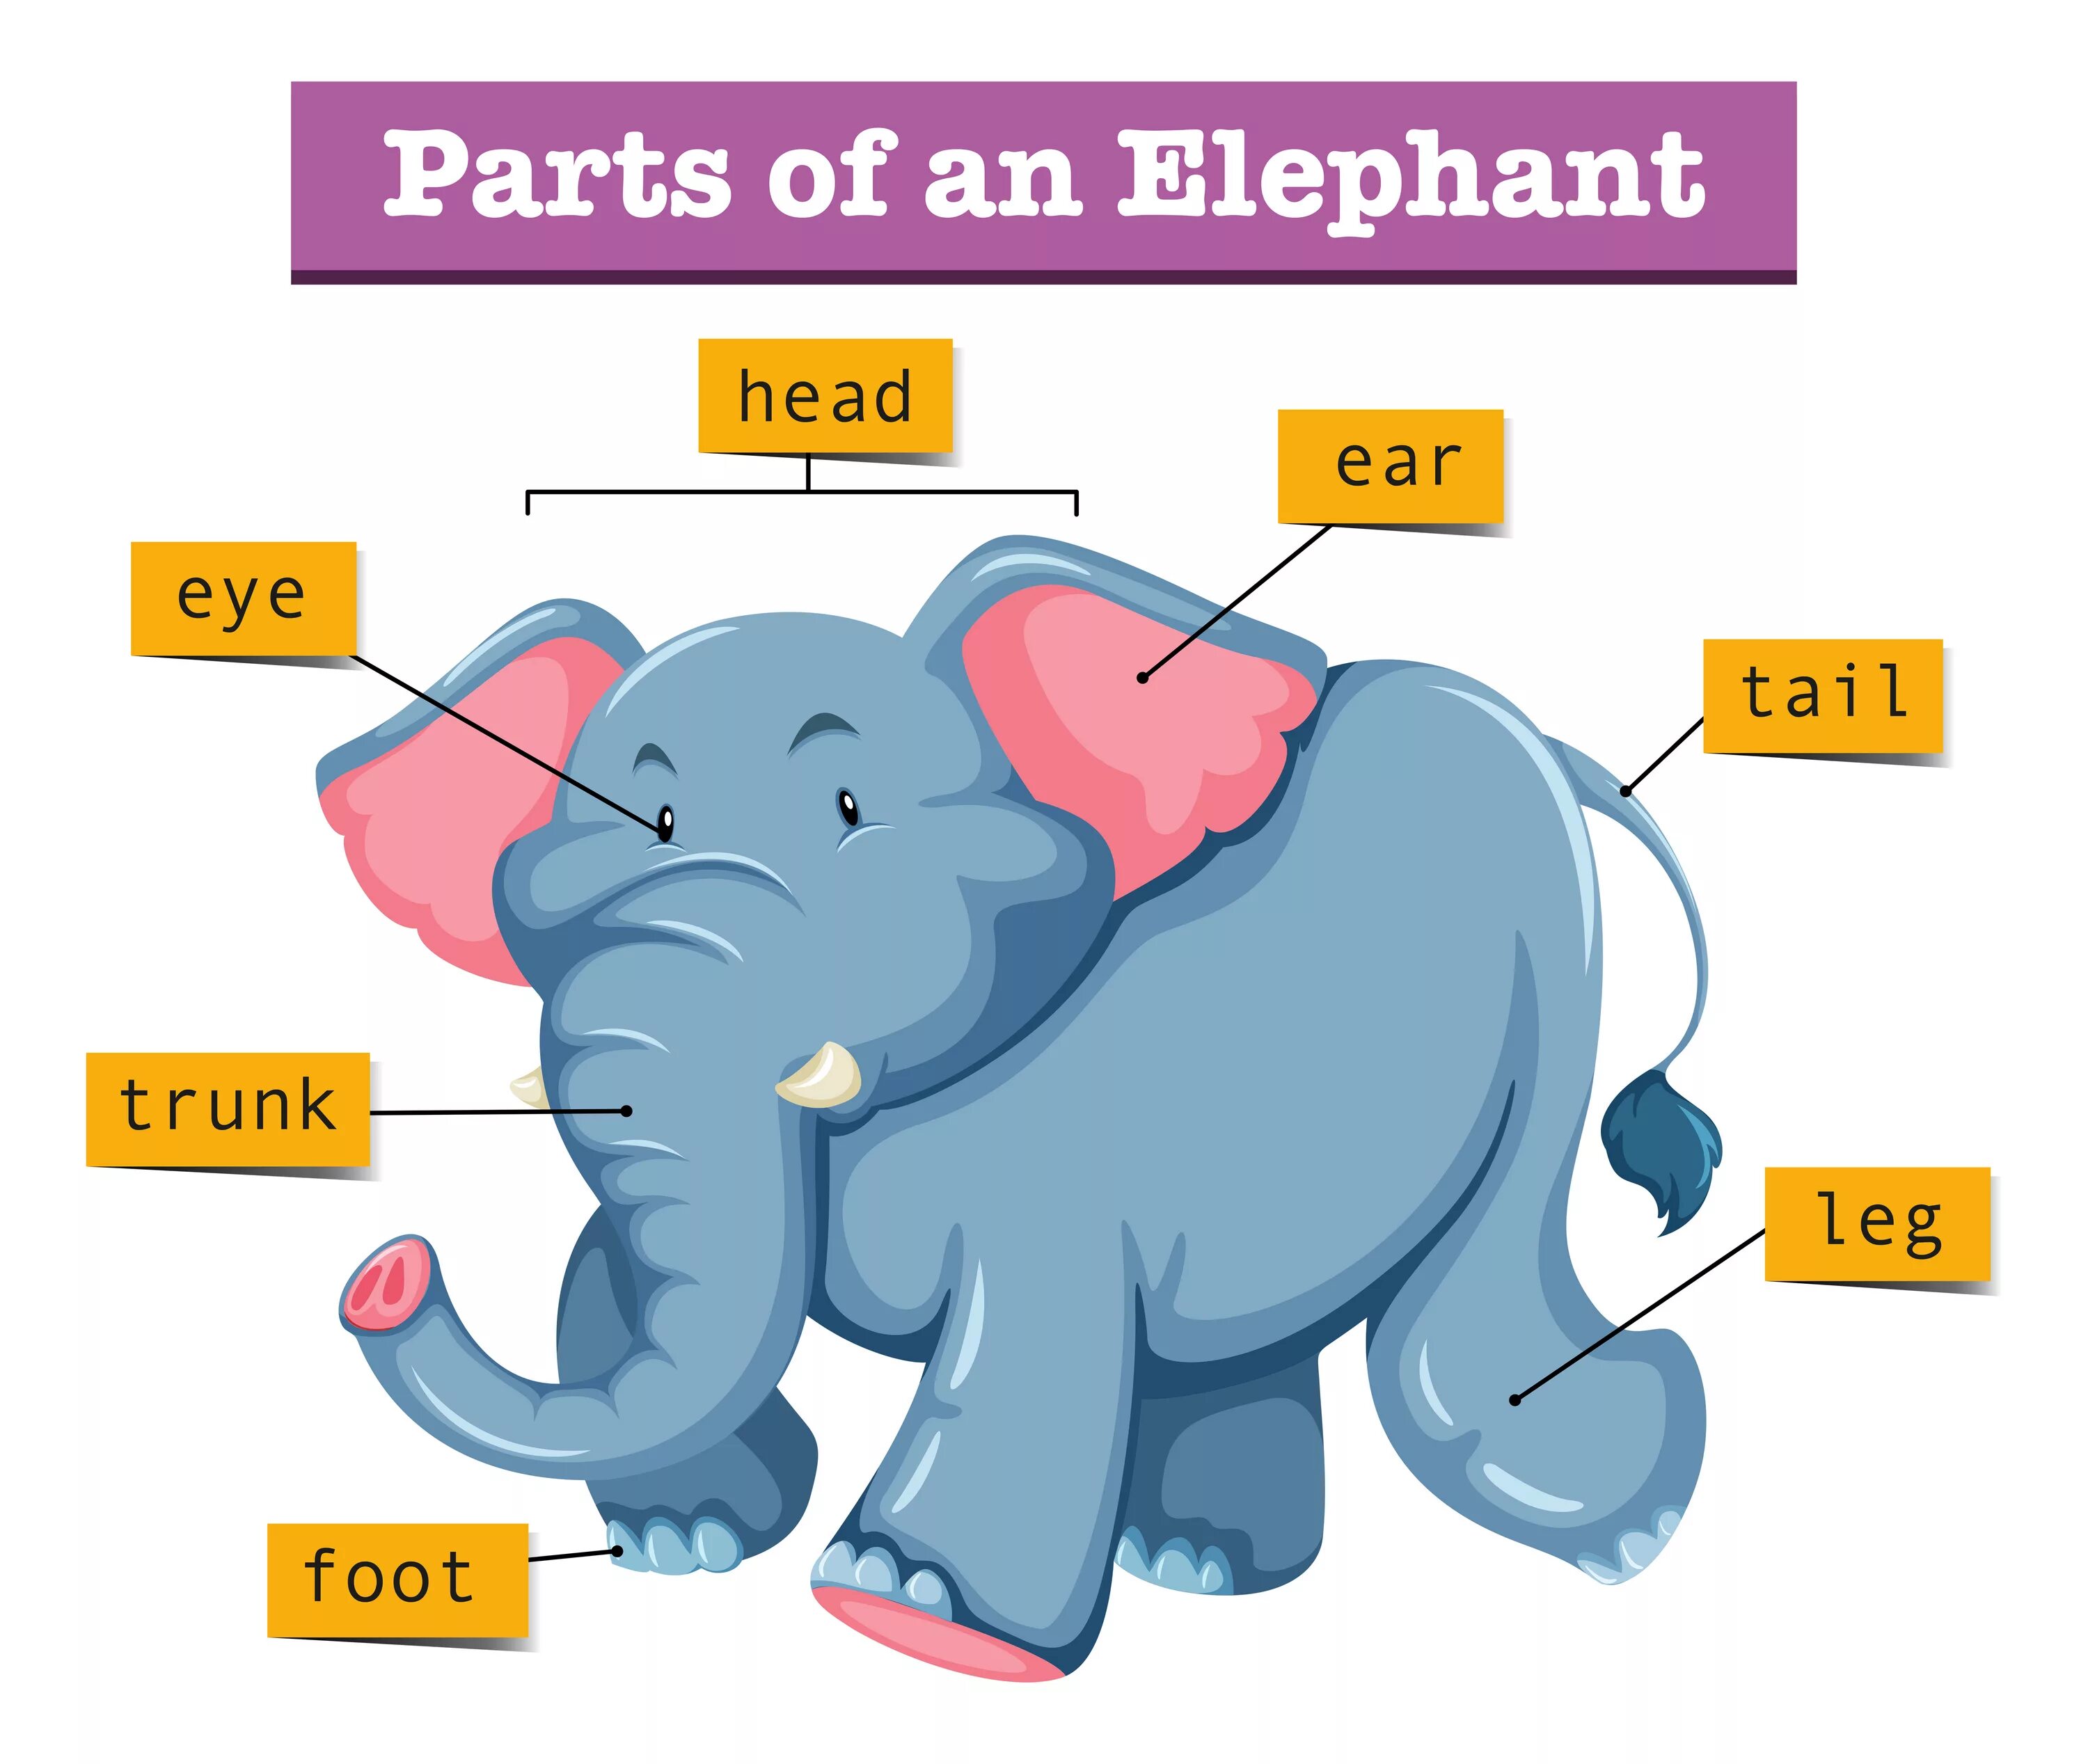 Elephant перевод. Части слона. Части тела слона на английском. Части тела слона для детей. Строение тела слона для детей.